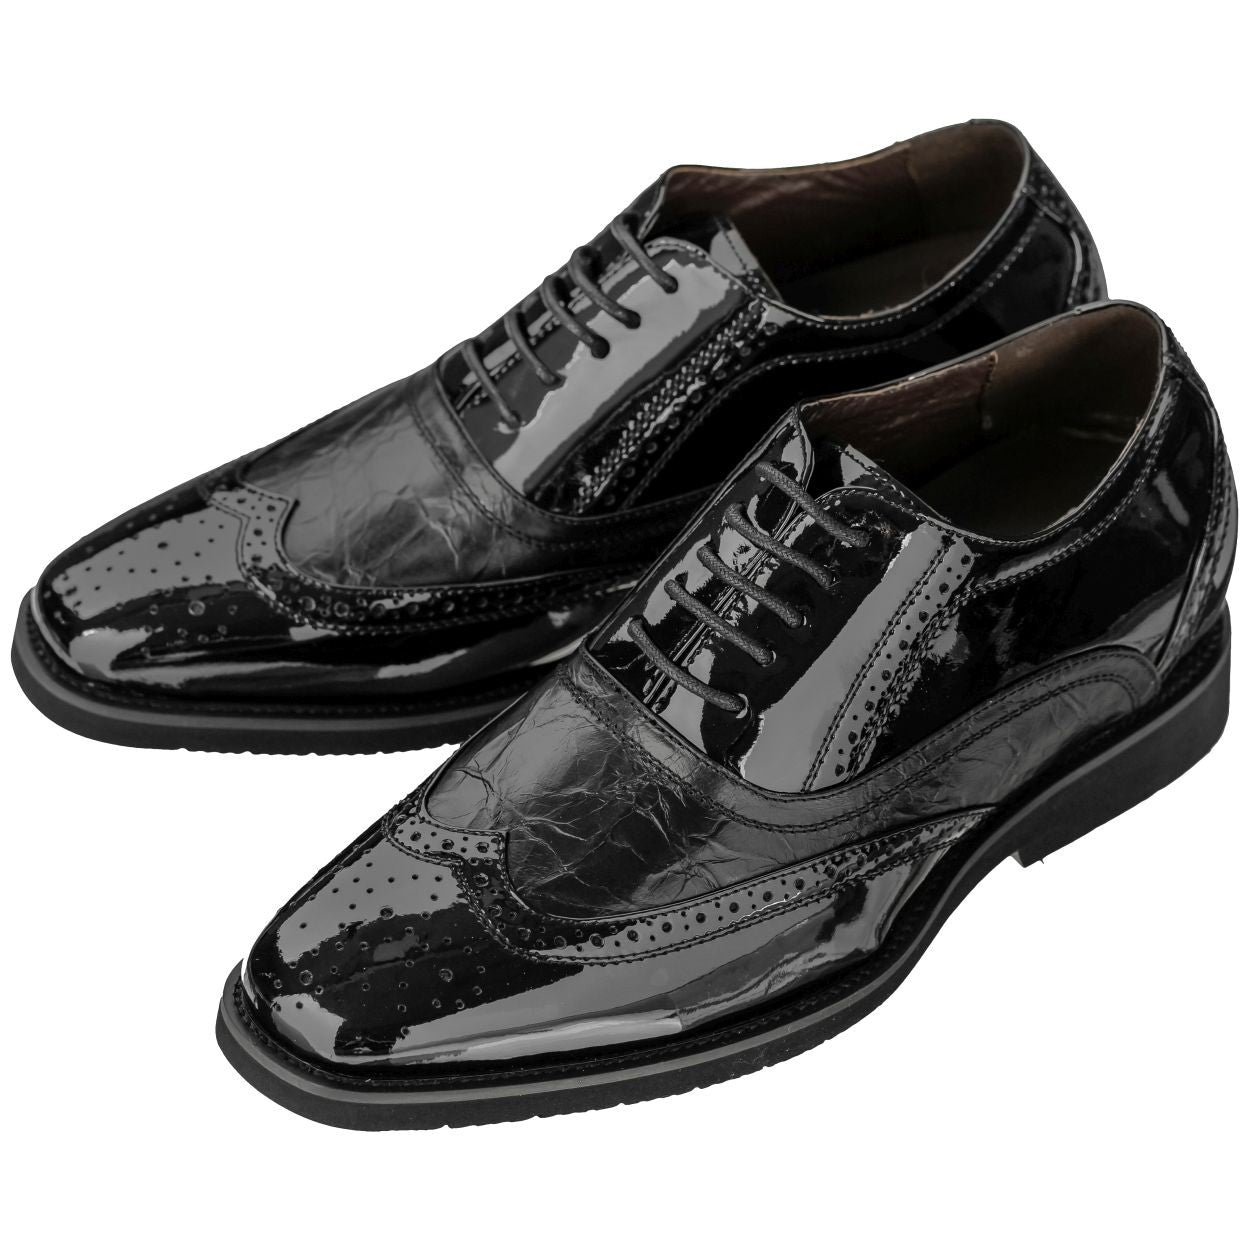 Elevator shoes height increase CALDEN 2.4-Inch Taller Black Elevator Dress Shoes K320011